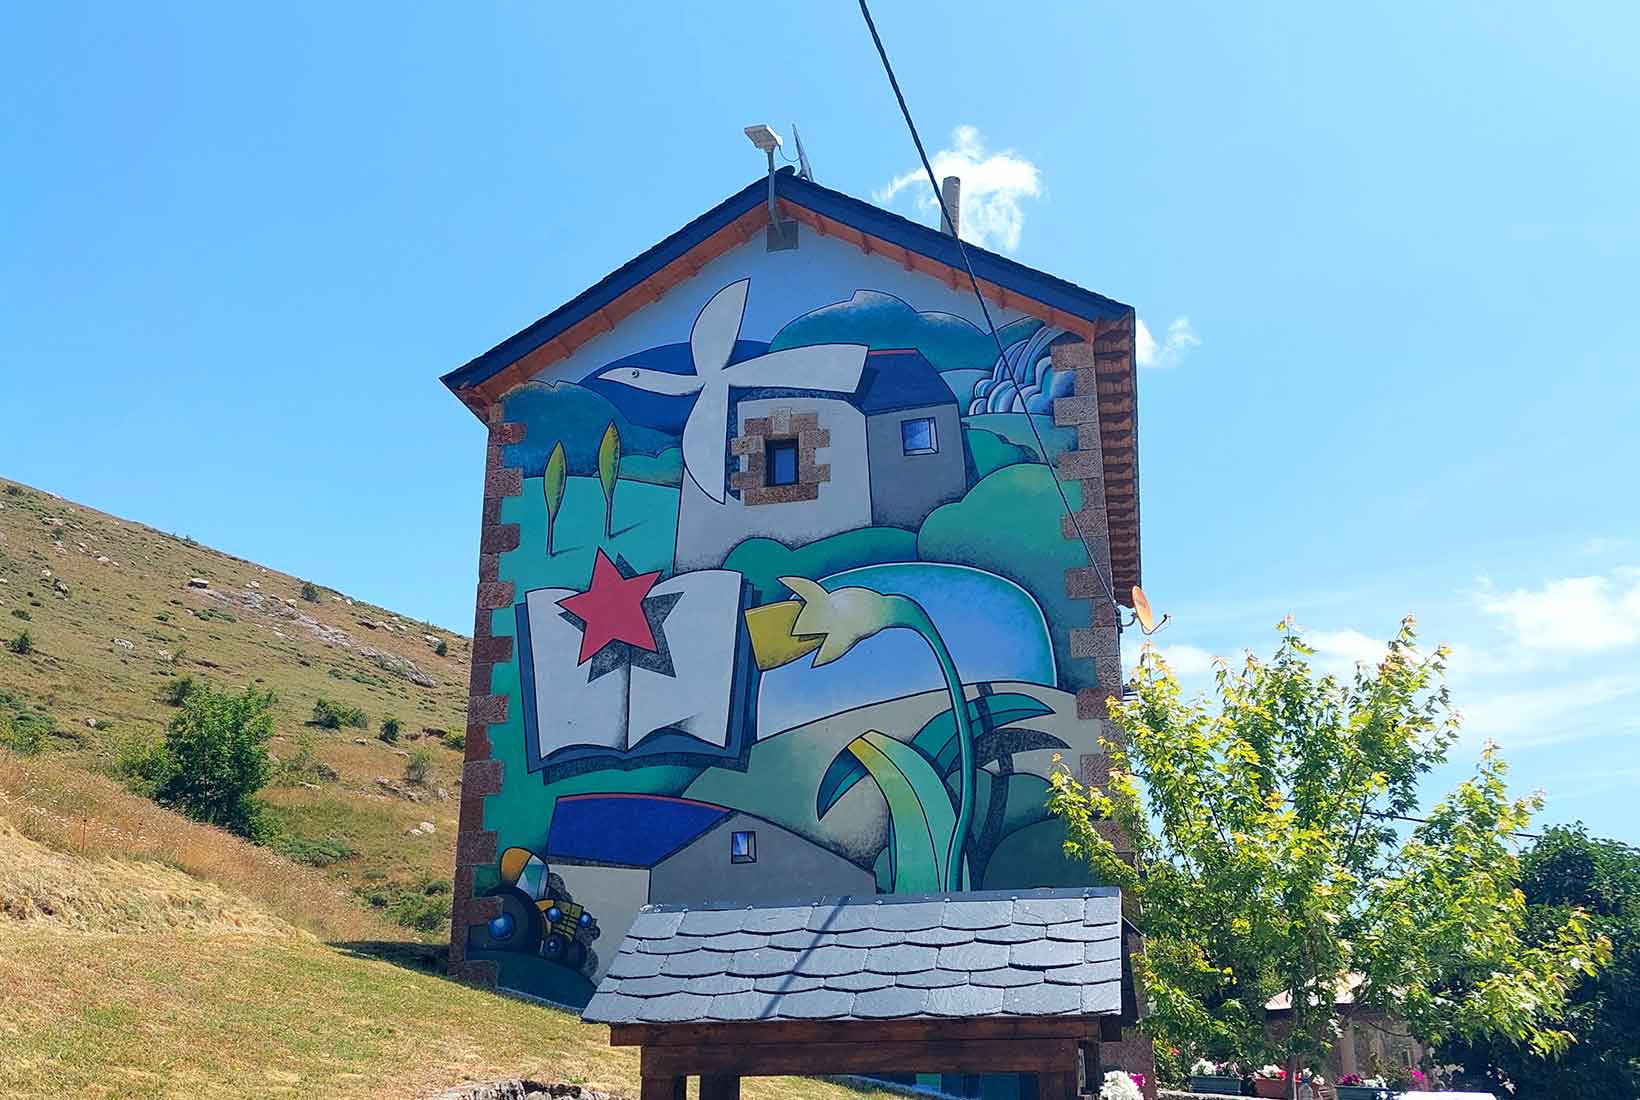 Colorido mural de Manolo sierra sobre la fachada de una casa en el pueblo de Lago de Babia